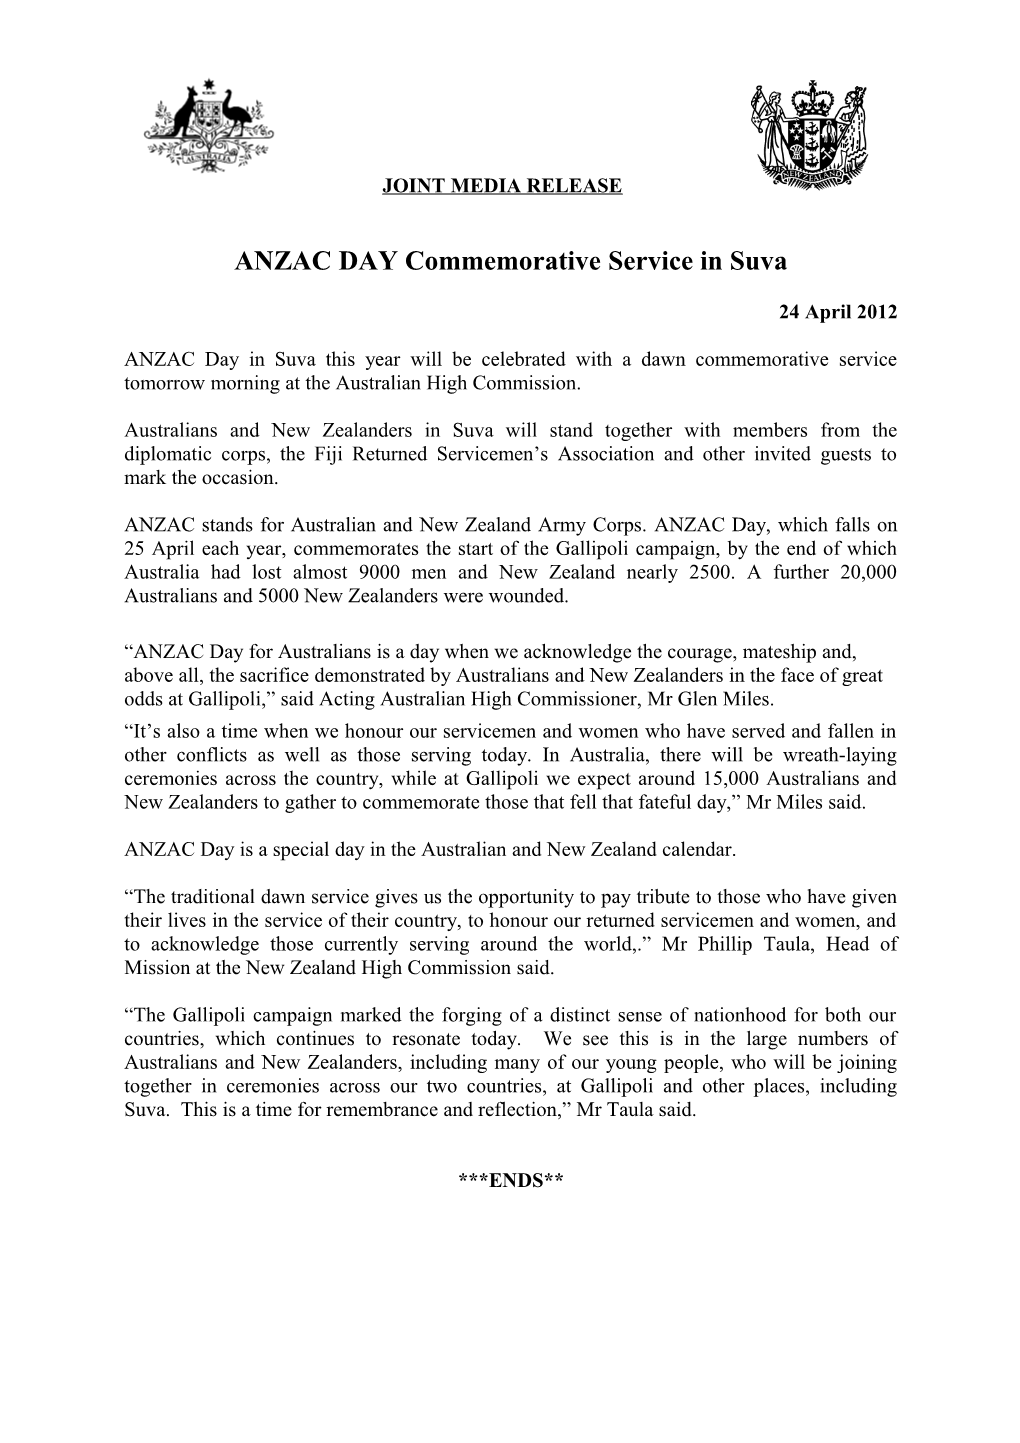 ANZAC DAY Commemorative Service in Suva